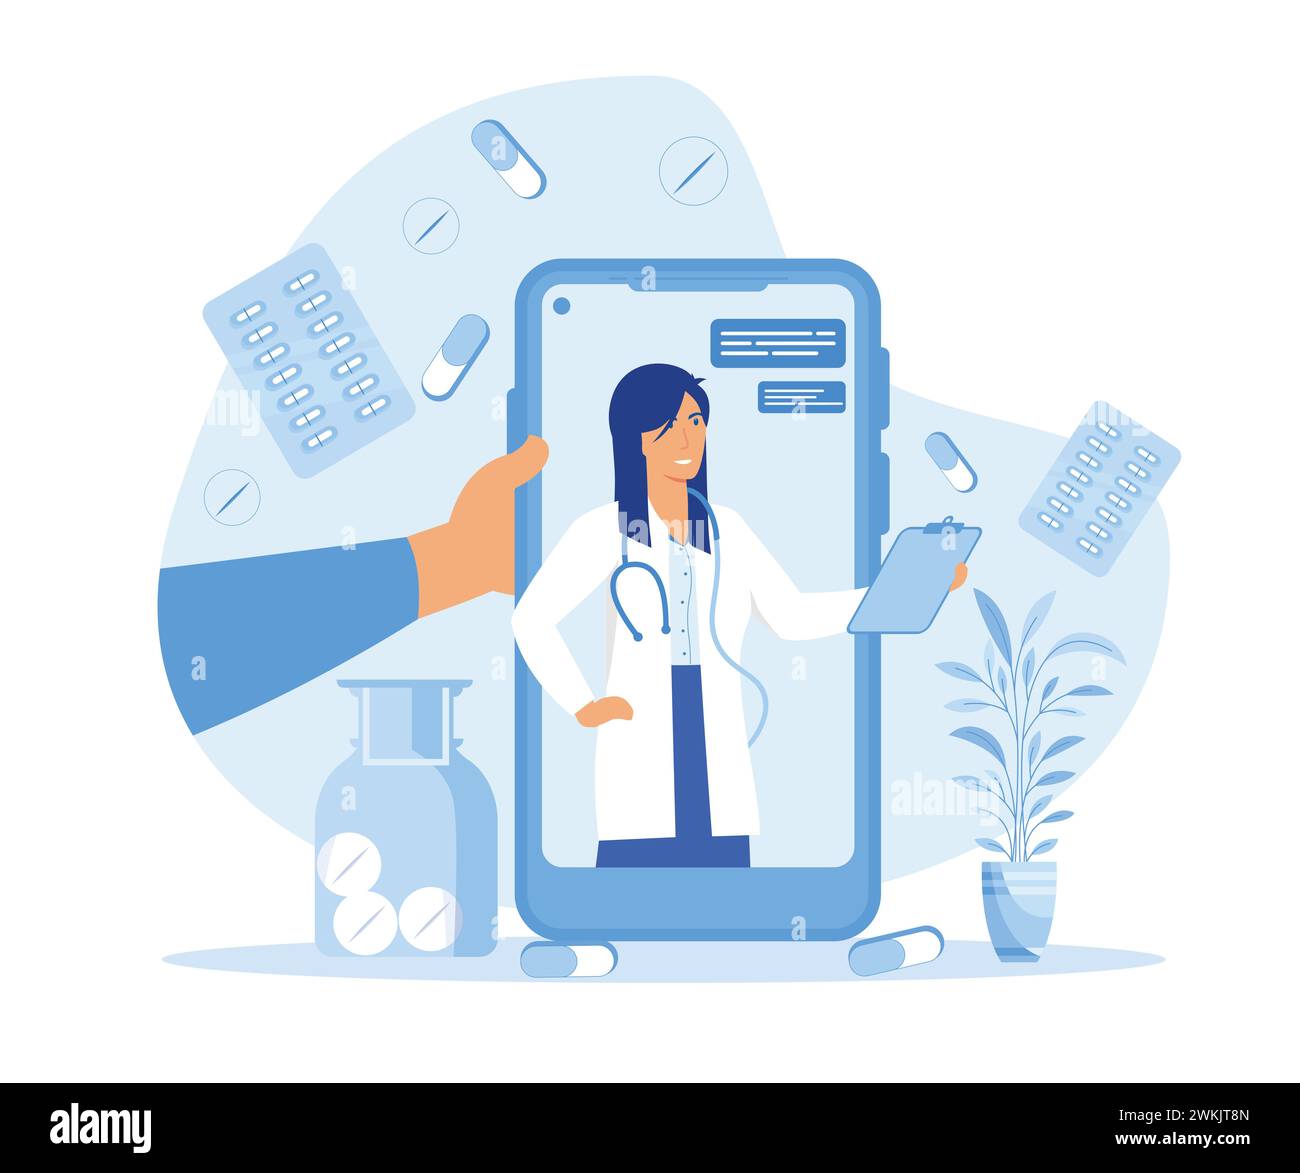 Online-Medizin und Gesundheitswesen, Arztkonsultationen und Behandlung mit einem Smartphone, internetvernetztes Krankenhaus. Moderne Illustration des flachen Vektors Stock Vektor